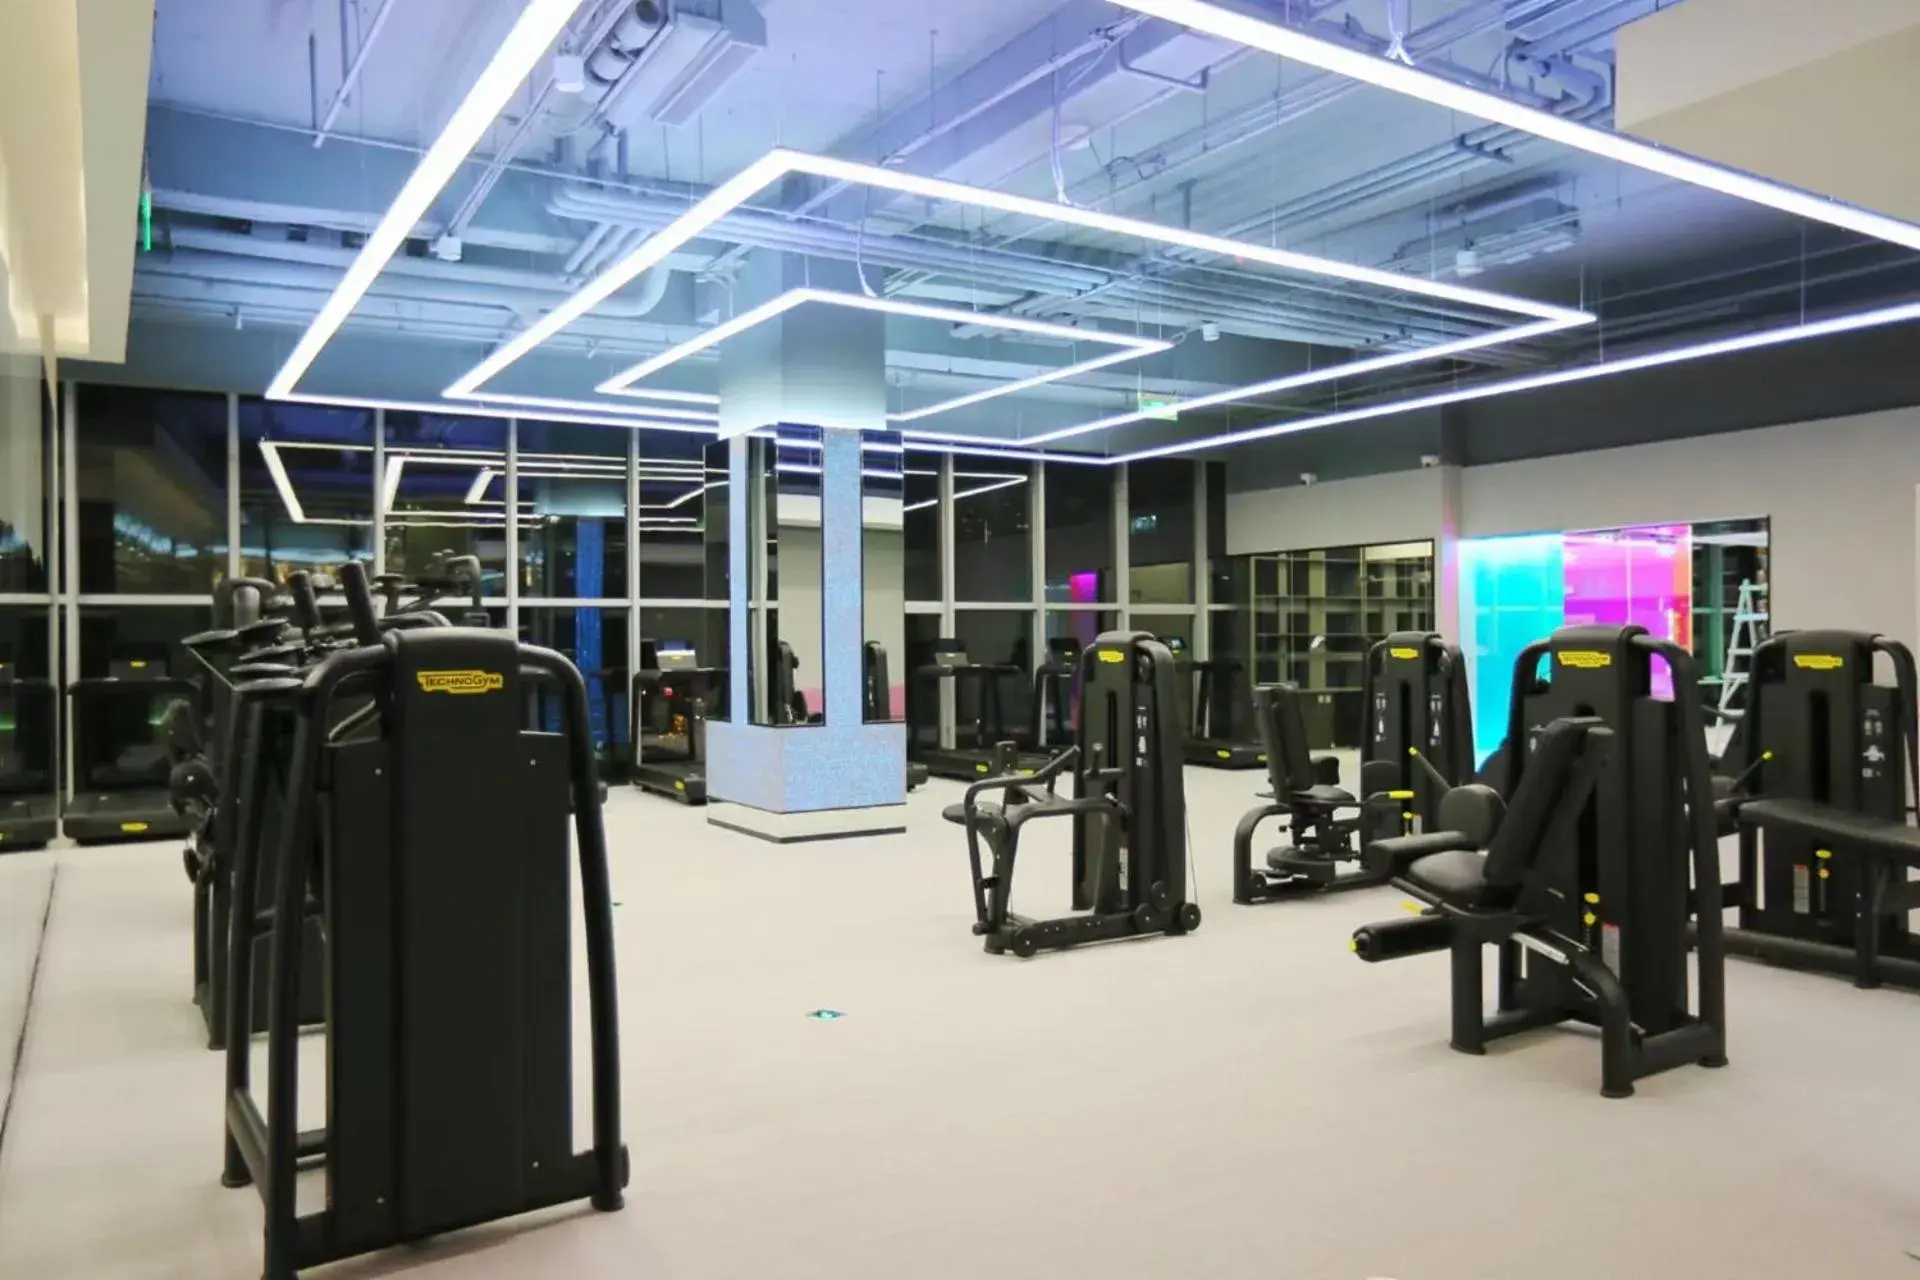 Fitness centre/facilities, Fitness Center/Facilities in Radegast Hotel CBD Beijing